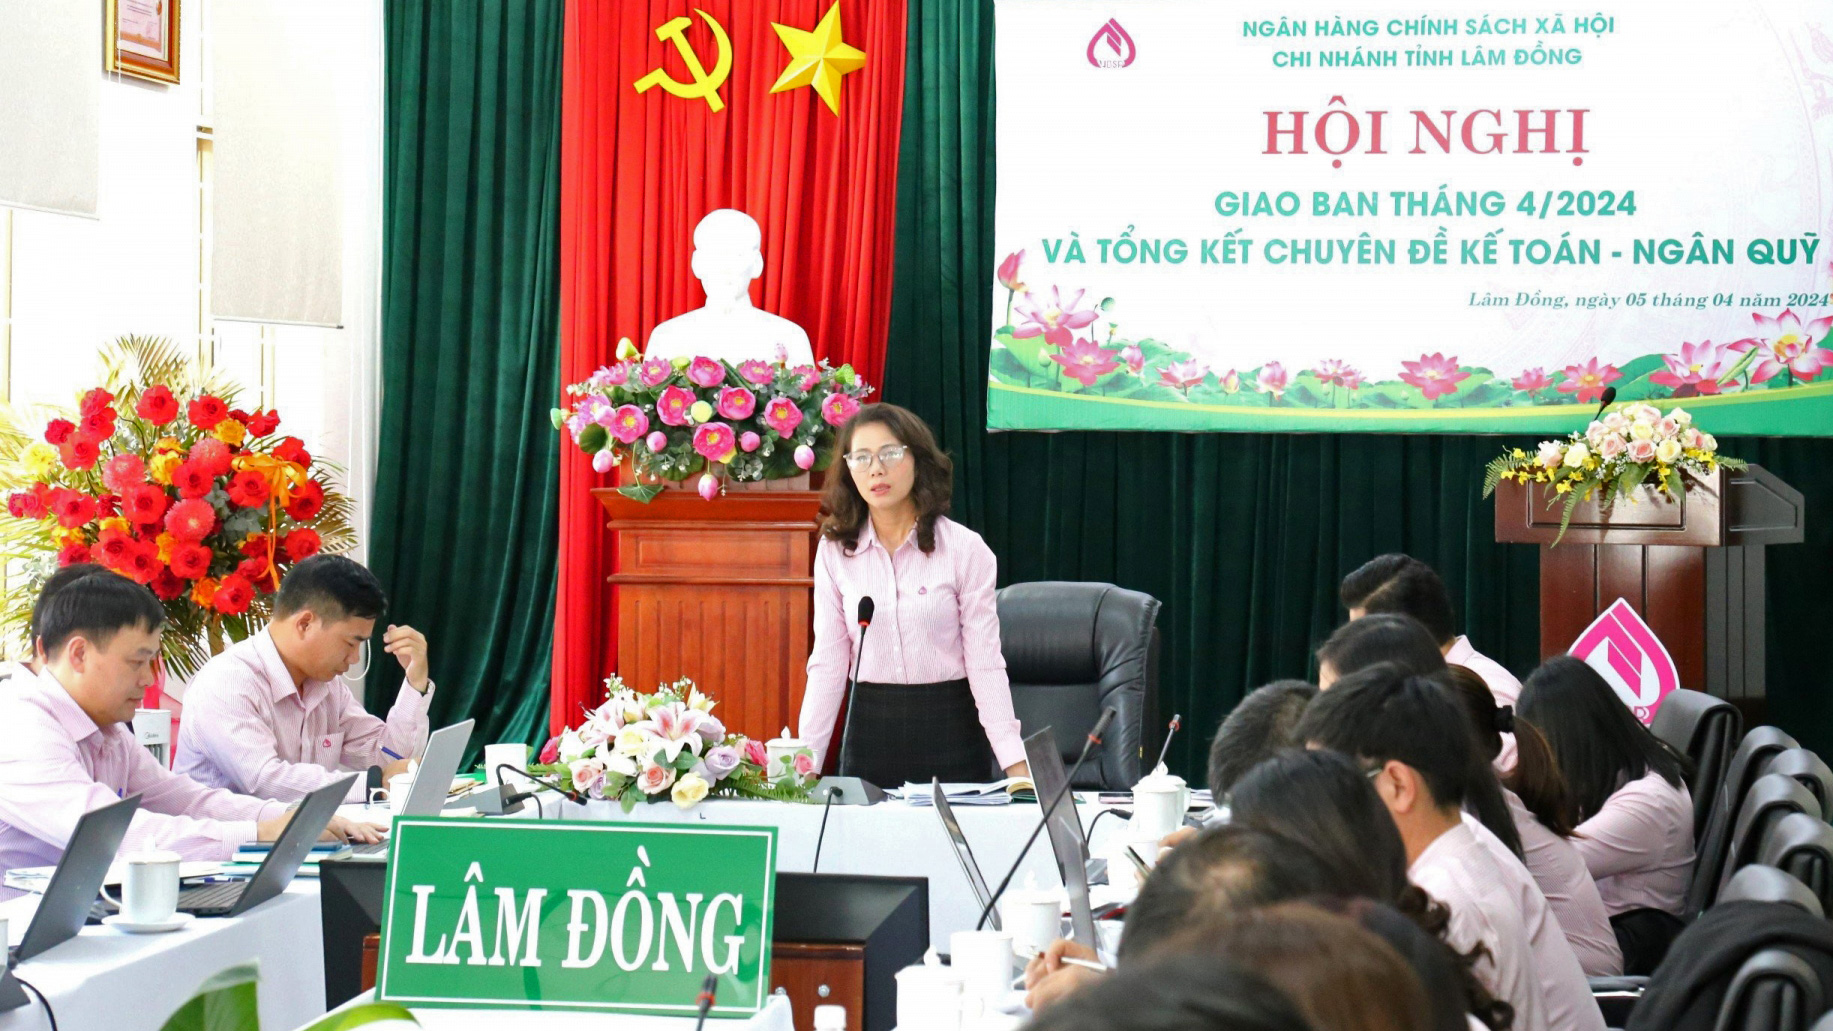 Tăng trưởng dư nợ và nguồn vốn của Ngân hàng Chính sách xã hội Chi nhánh tỉnh Lâm Đồng đạt 3,5%